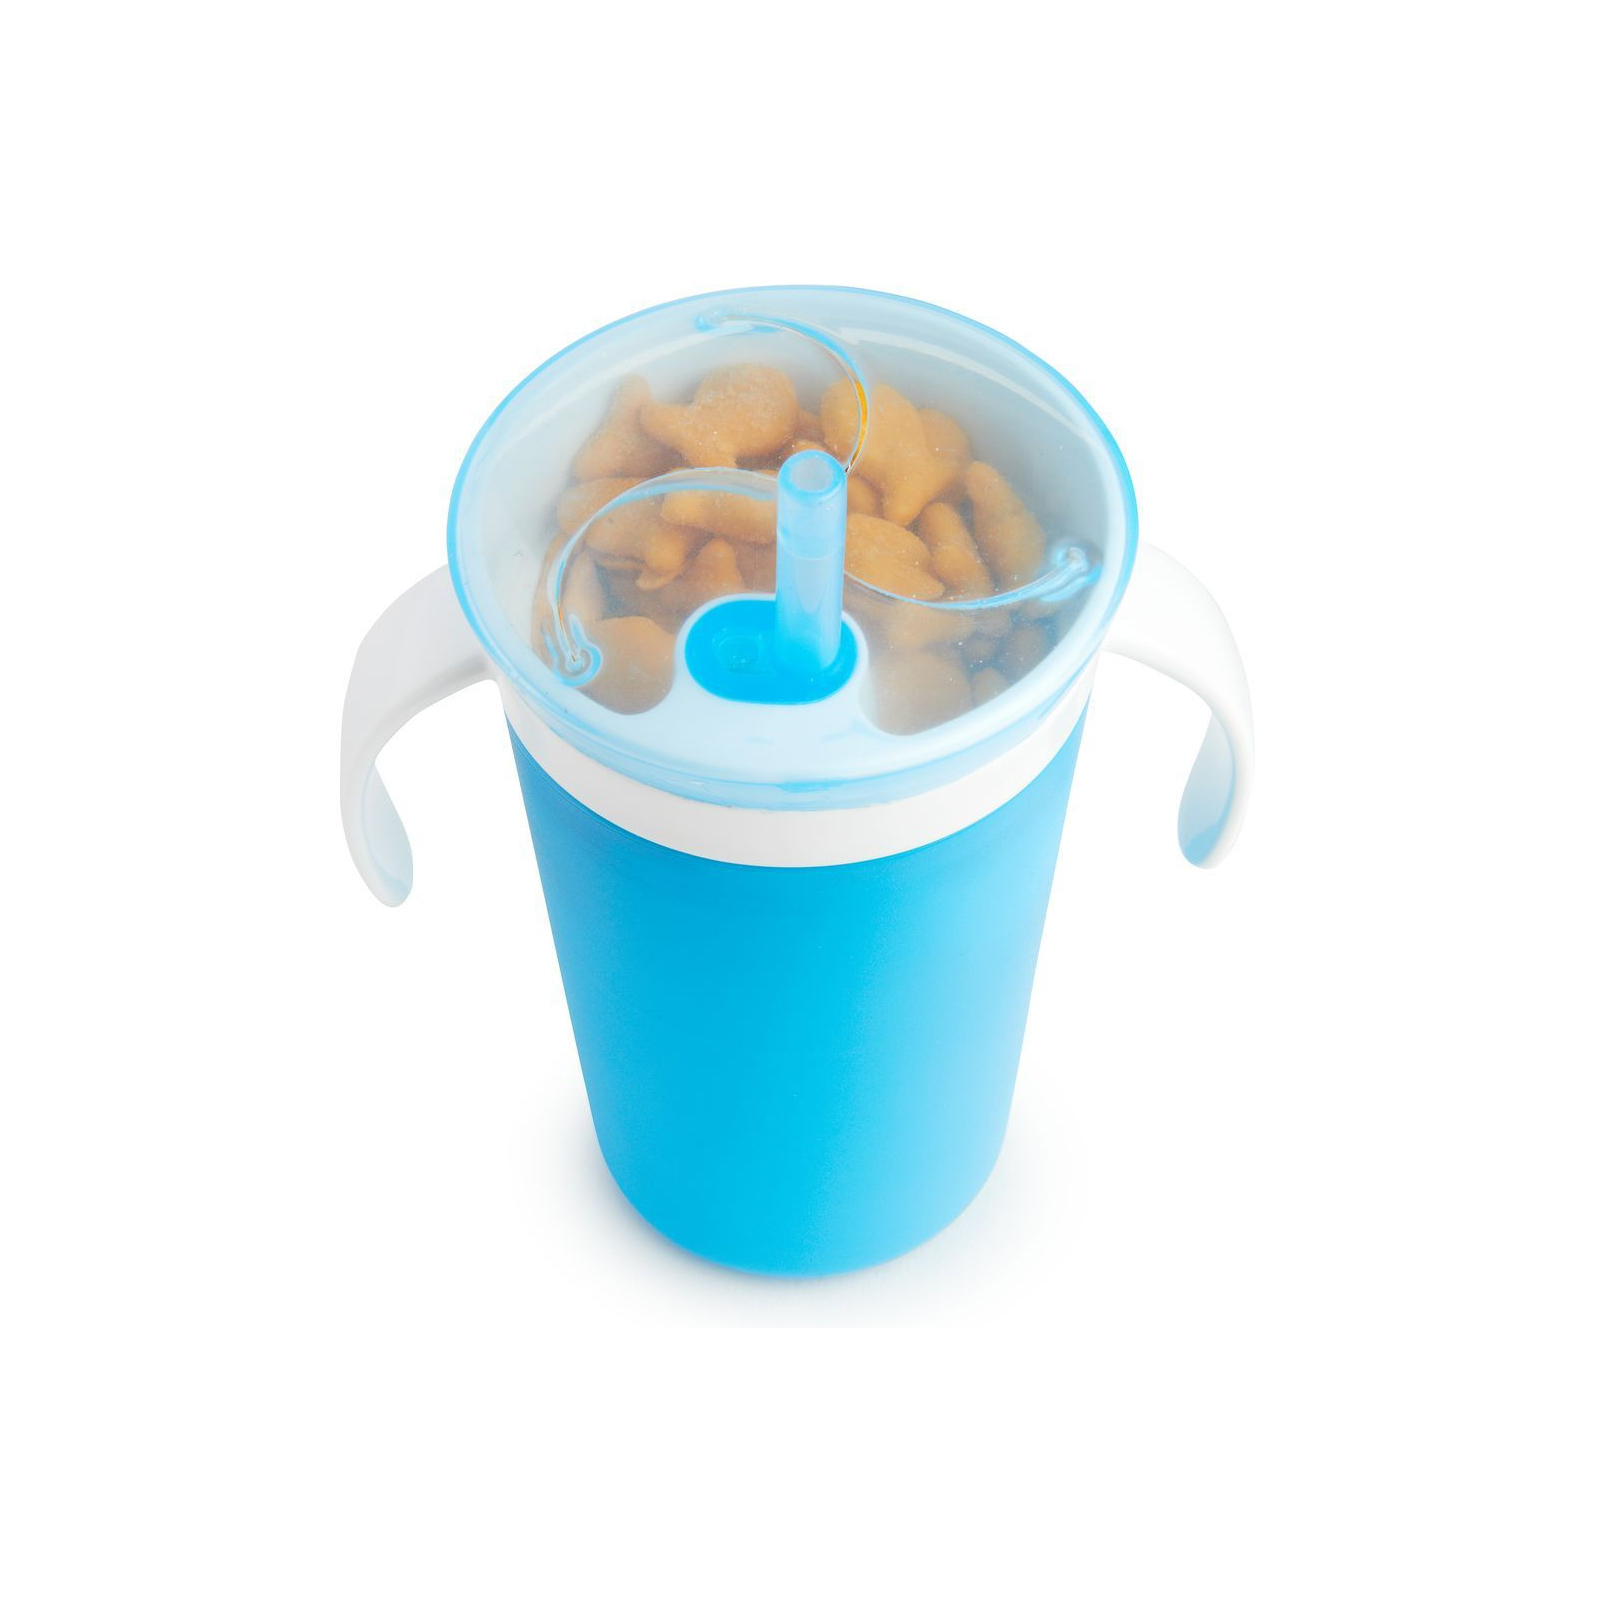 Поїльник-непроливайка Munchkin Snack and Sip блакитний (012459WWW) зображення 4